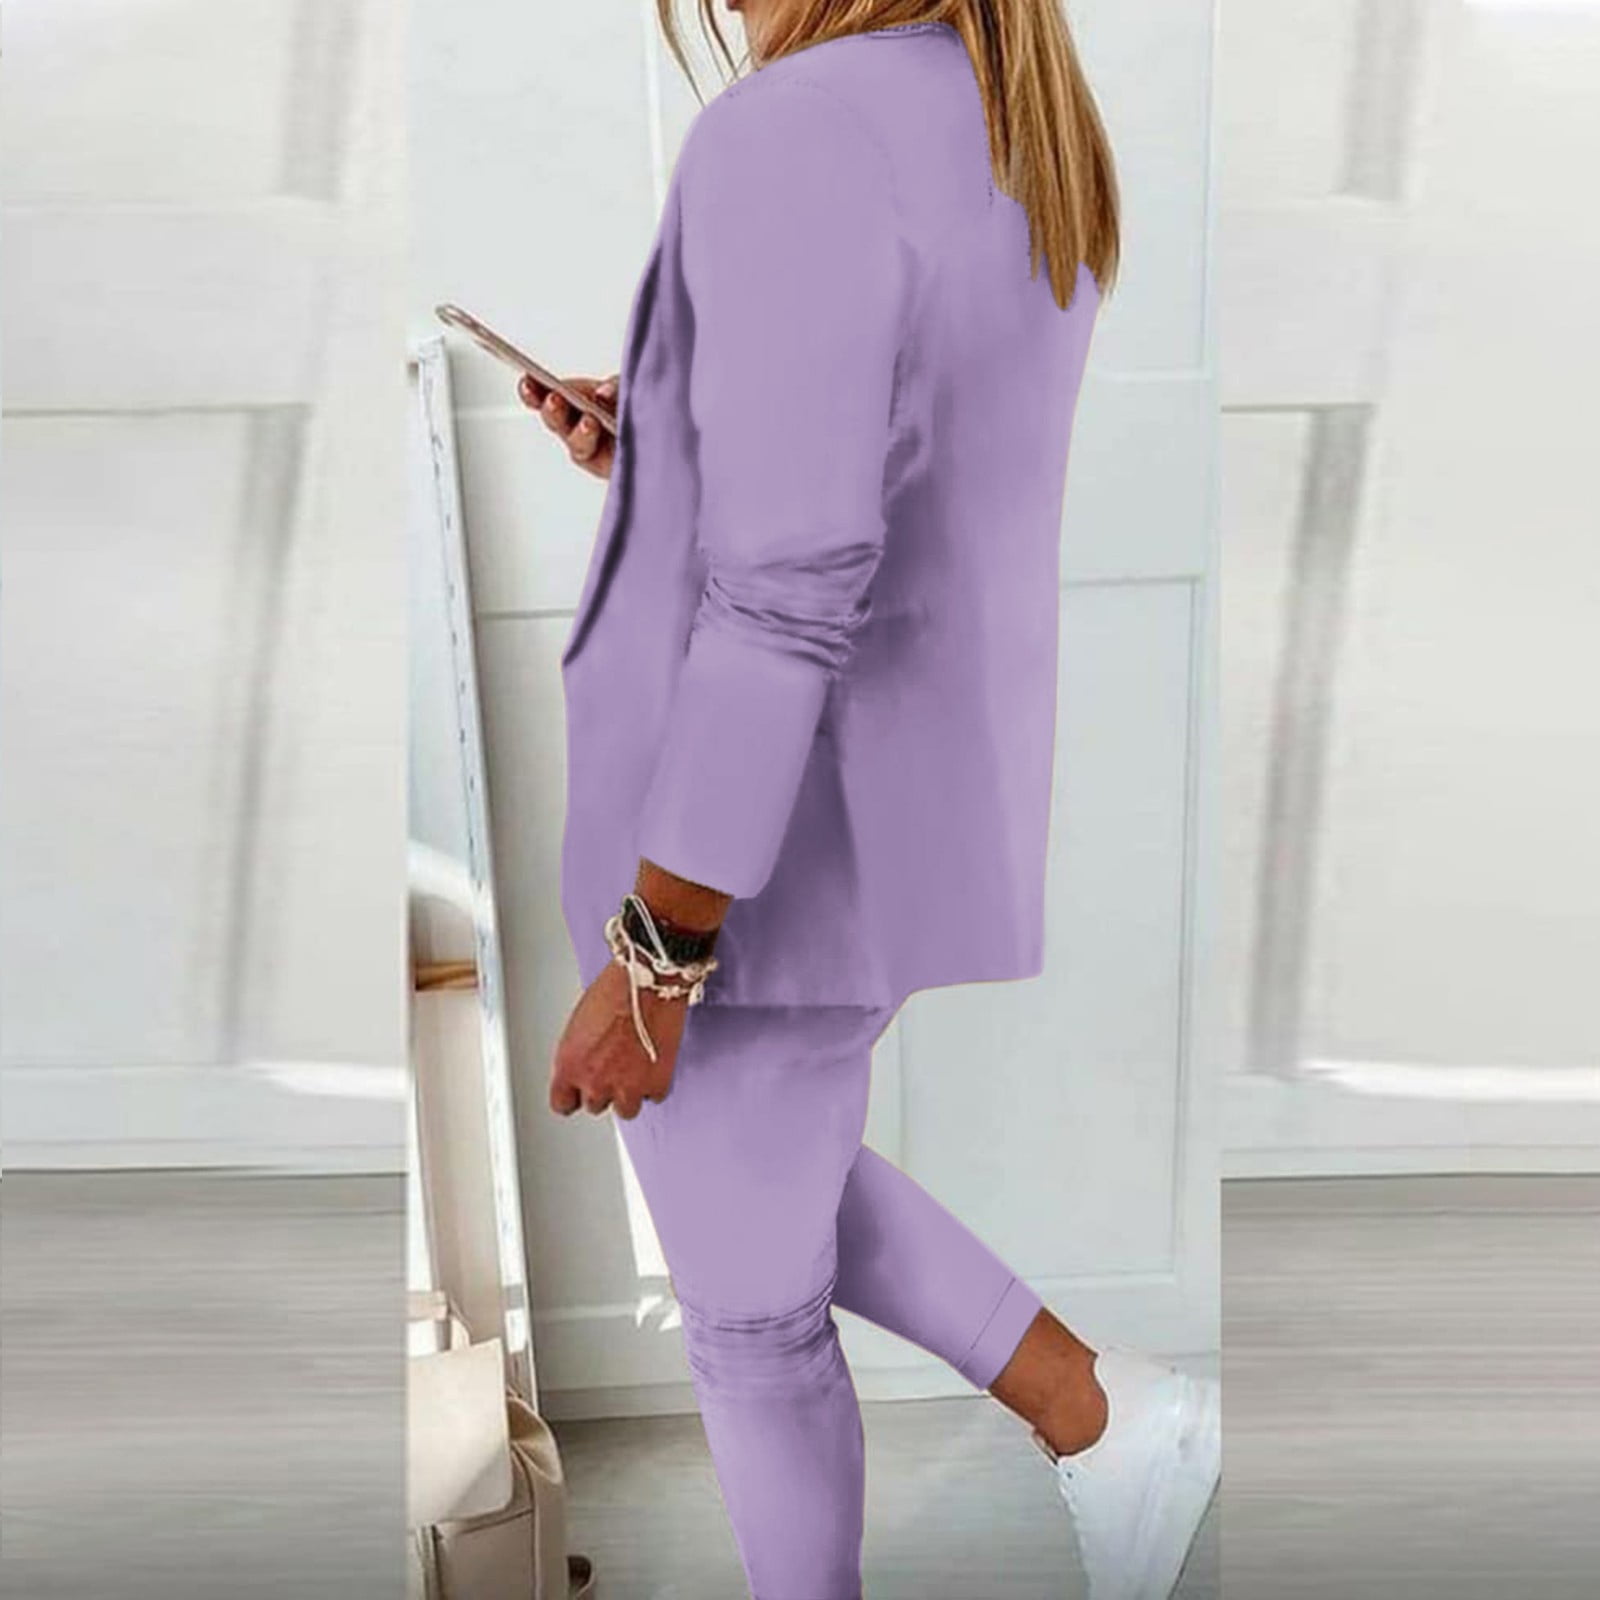 FRSASU Plus Size Long Sleeve clearance,Women's Long Sleeve Solid Suit Pants  Elegant Business Suit Sets Two-piece Suit Hot Pink 4(S) 